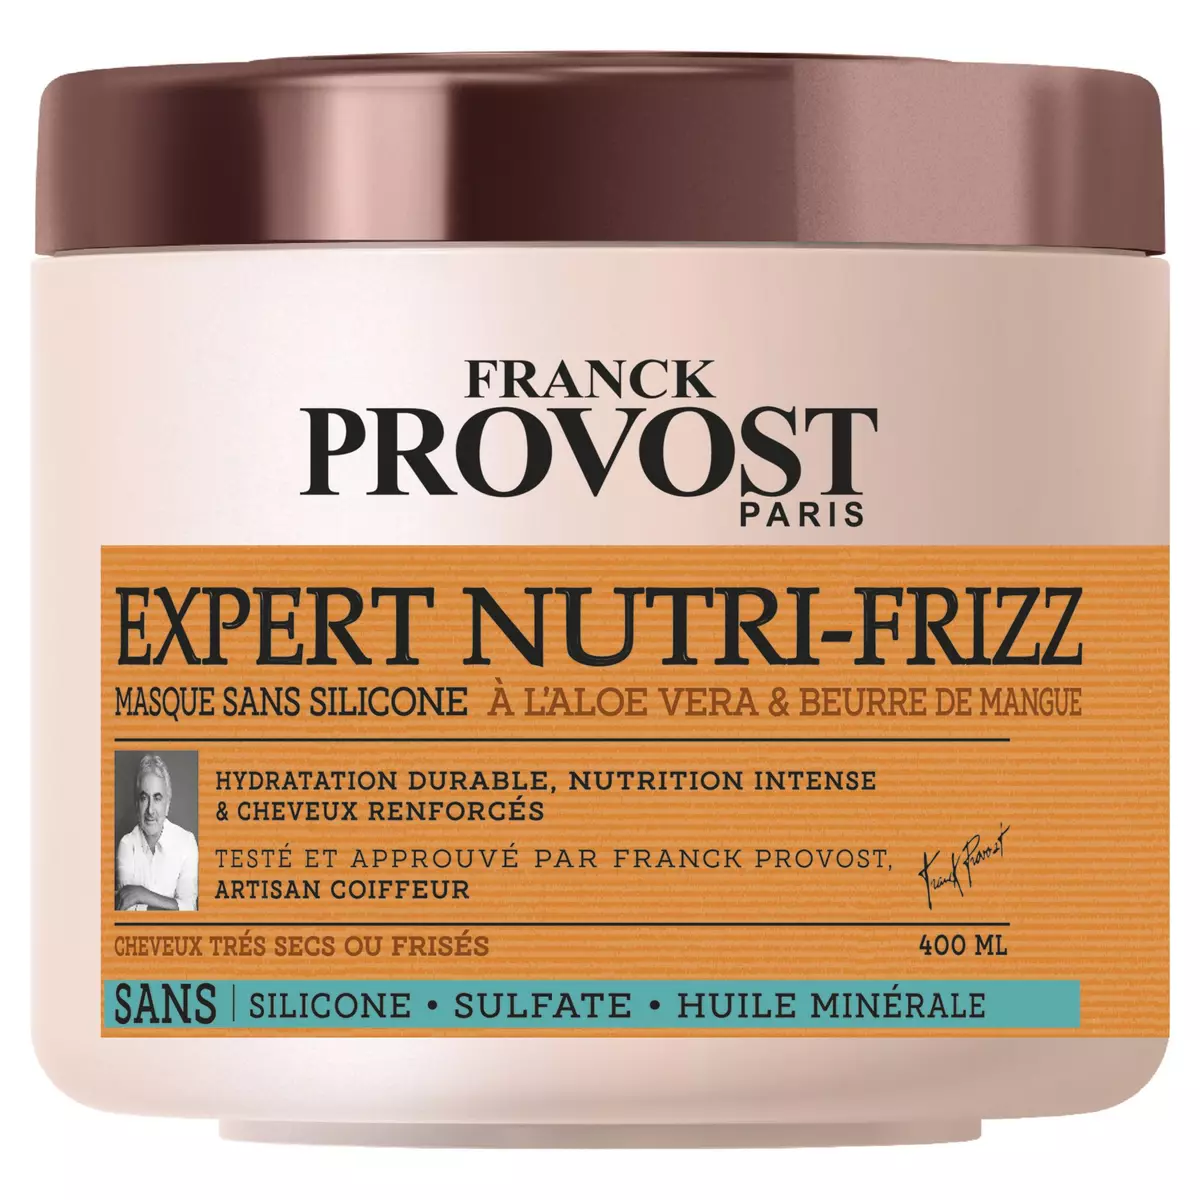 FRANCK PROVOST Expert Nutri-Frizz masque sans silicone à l'aloe vera et beurre de mangue cheveux très secs ou frisés 400ml